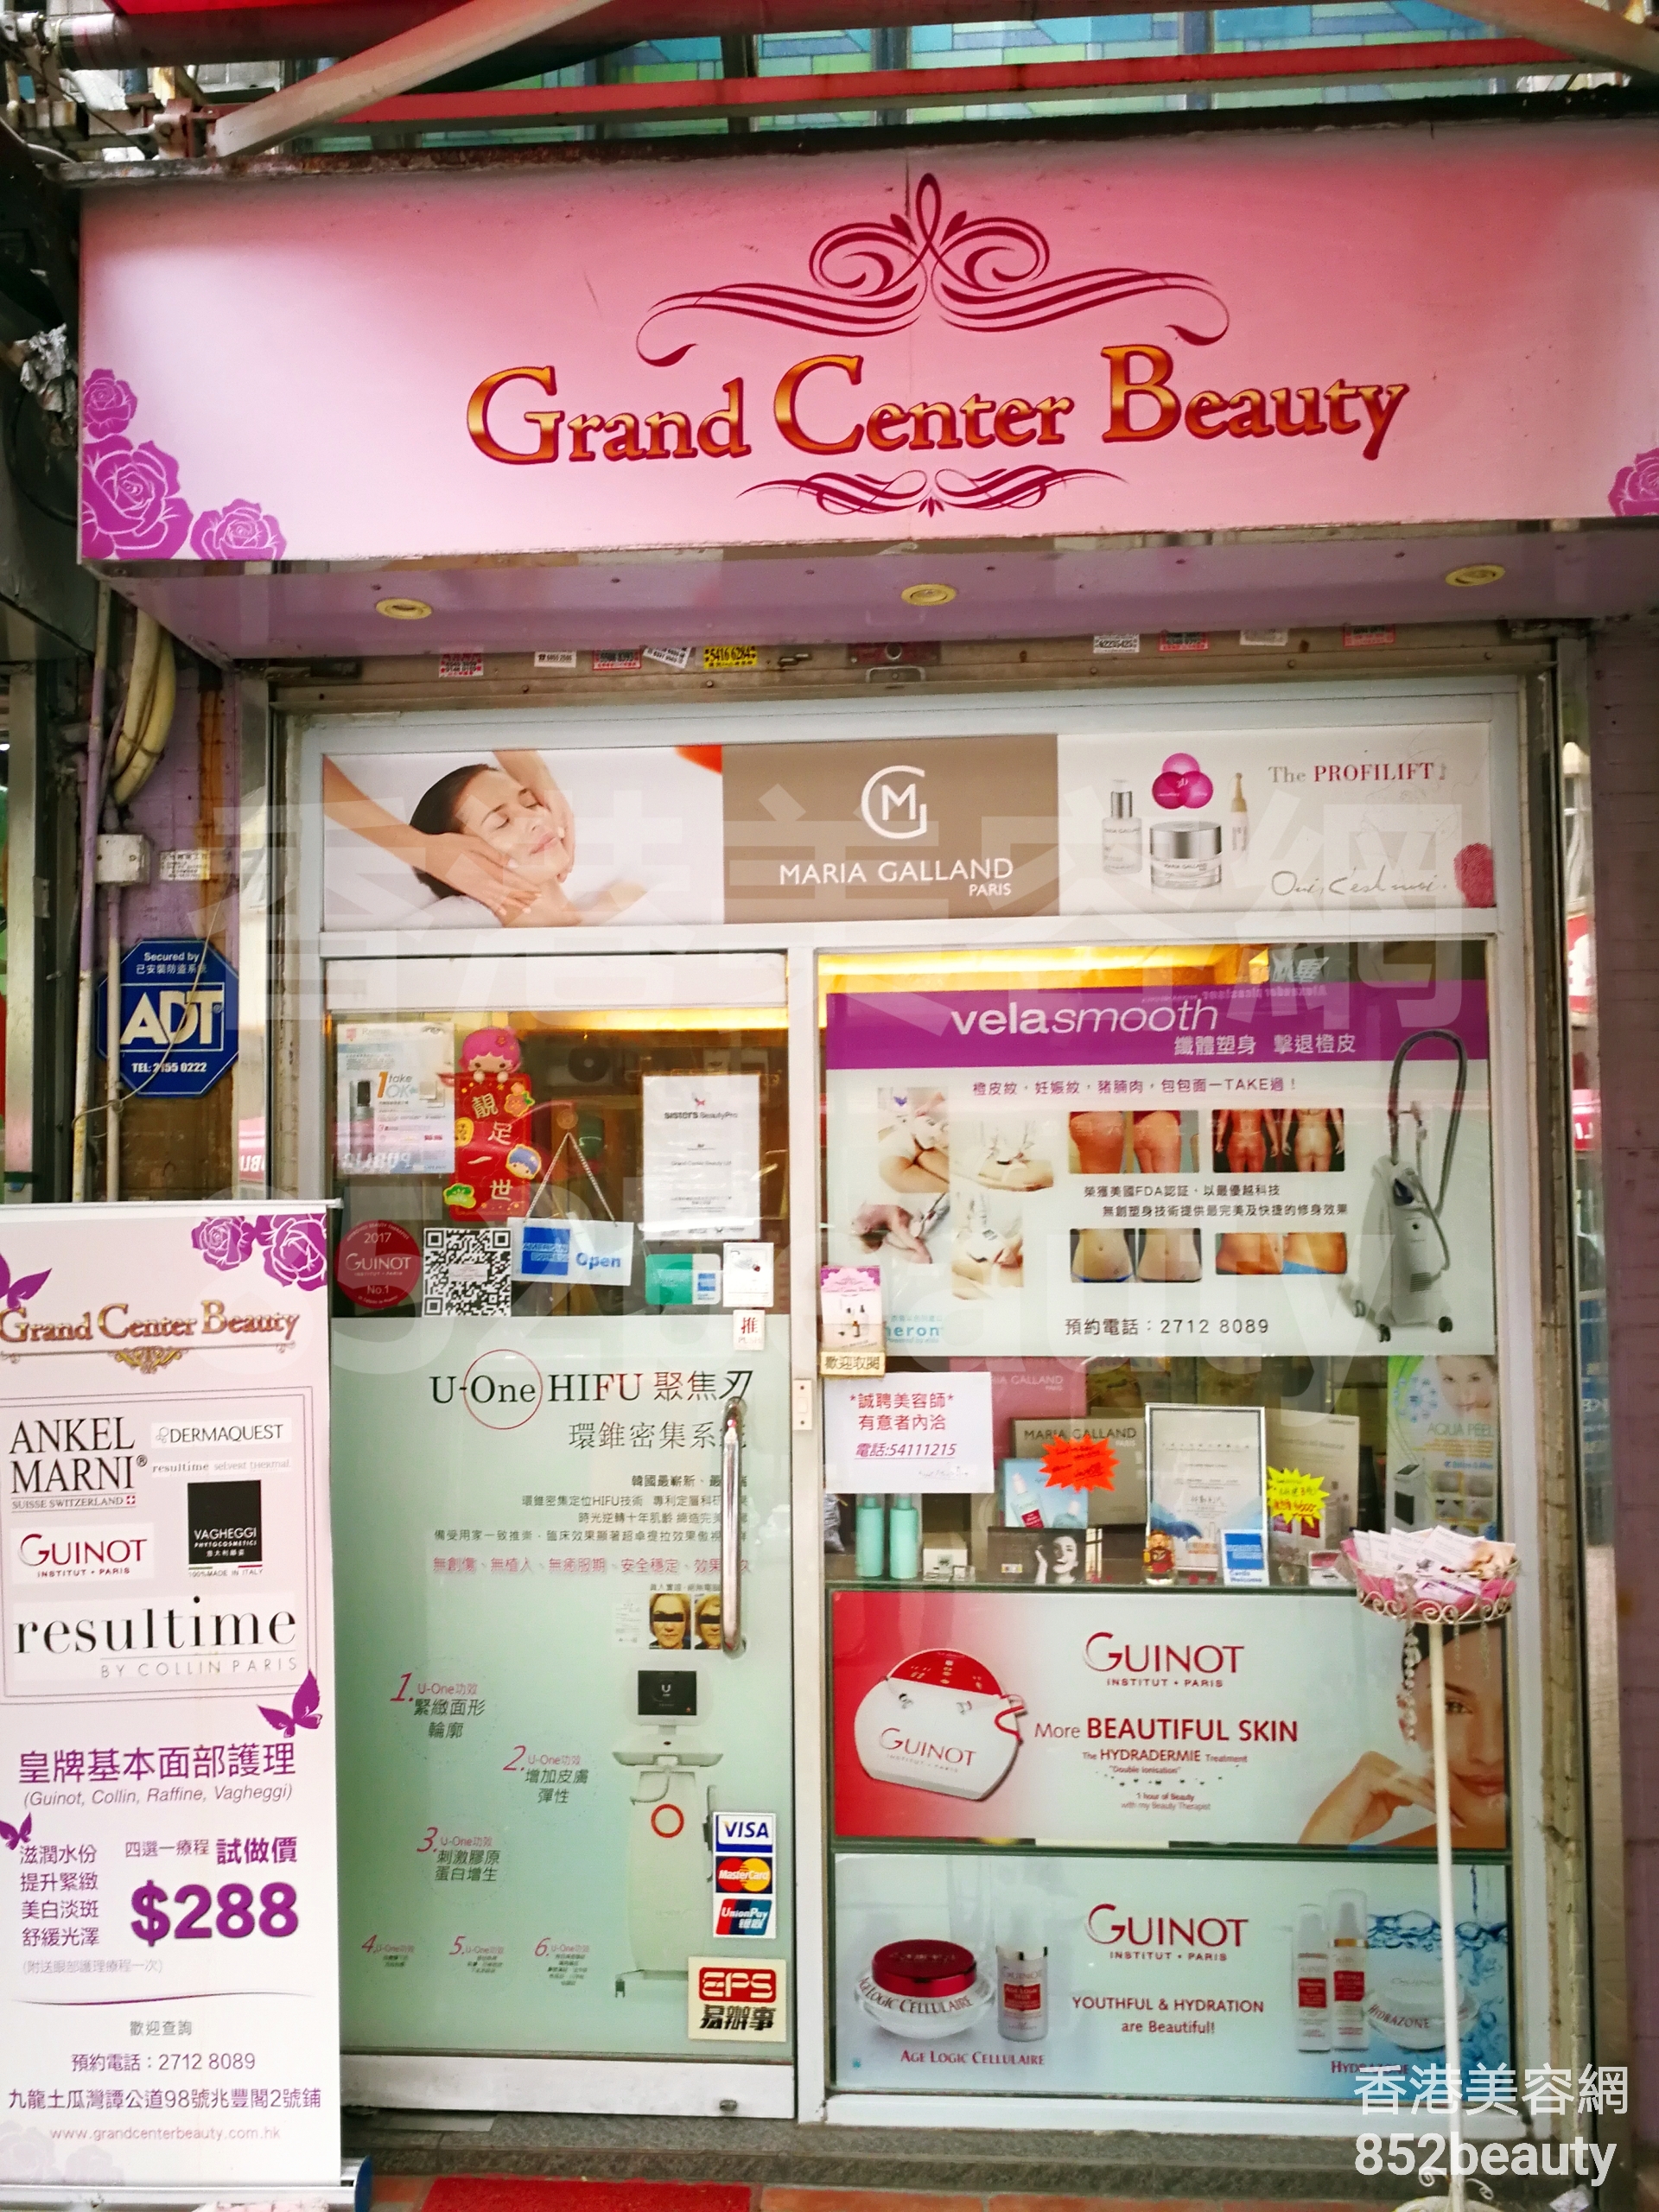 Men Grooming: Grand Center Beauty